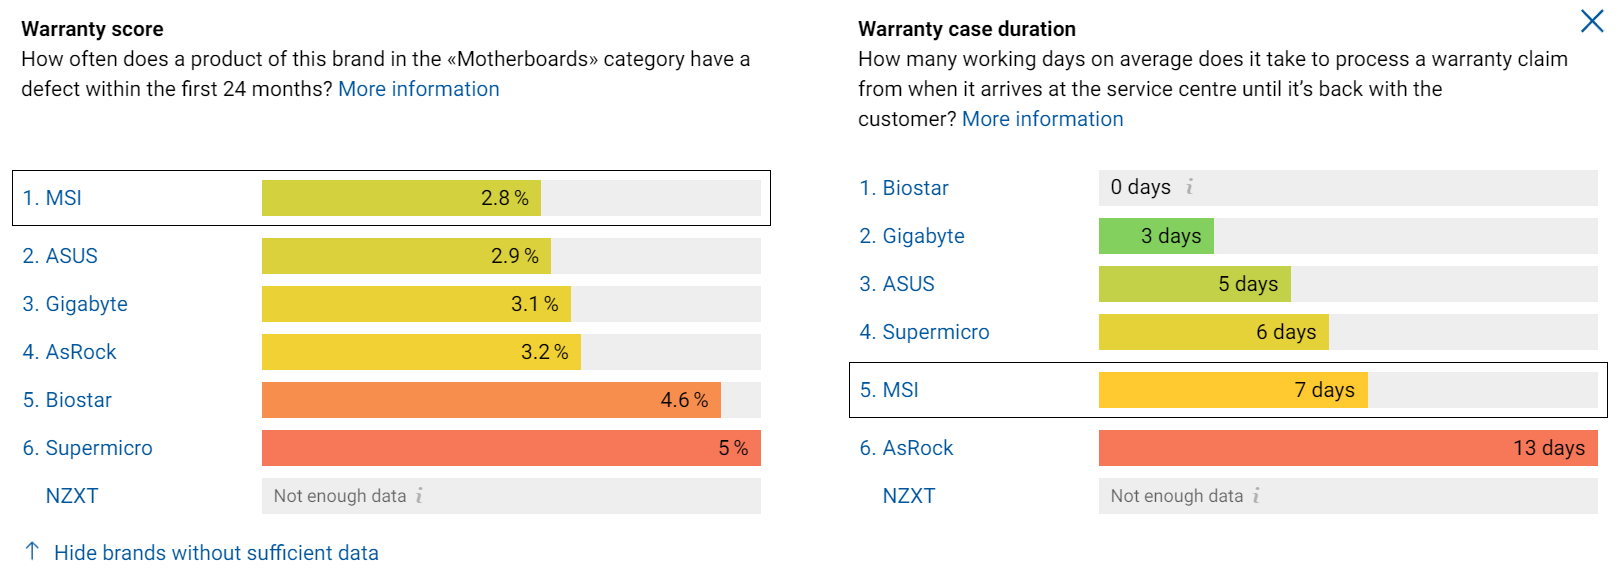 Voldoen partij Raadplegen Swiss retailer reveals 'warranty scores' for GPU/motherboard brands -  VideoCardz.com